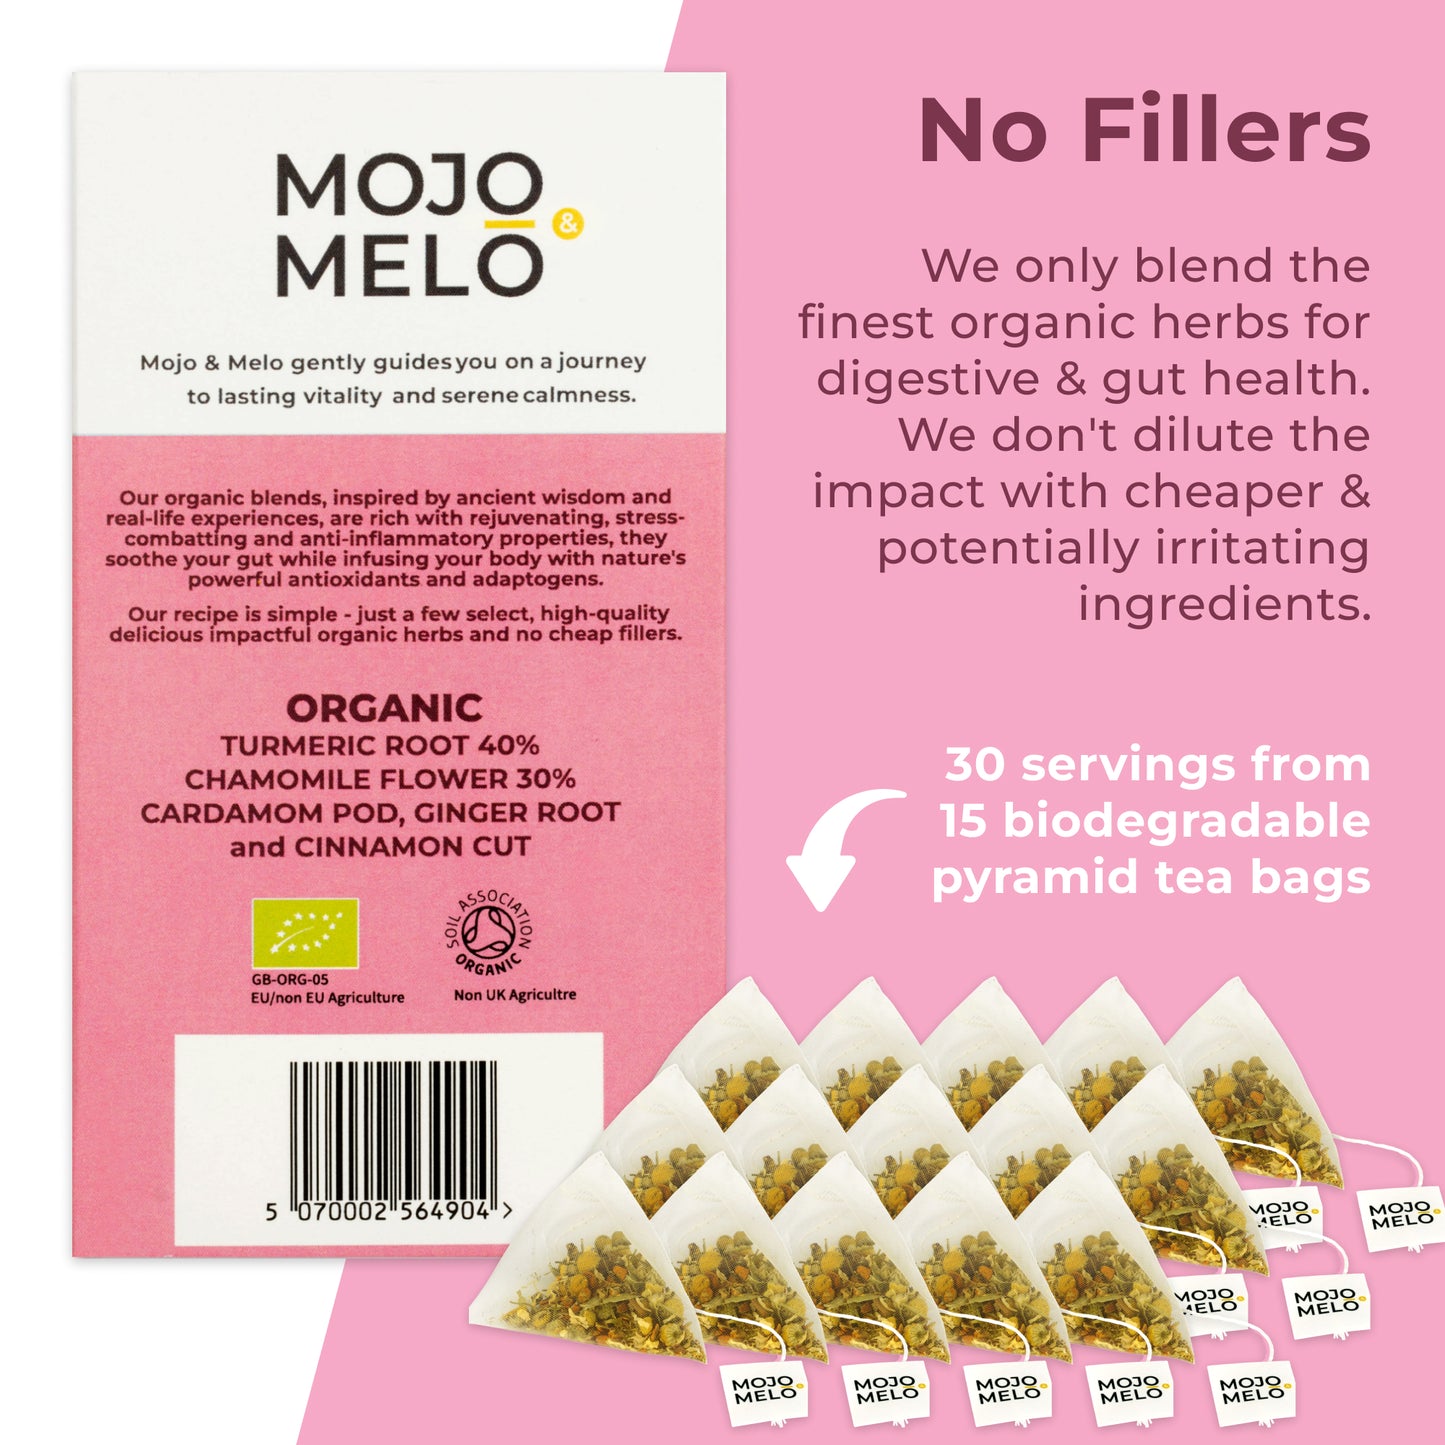 Mojo & Melo Organic Stomach Calm Tea